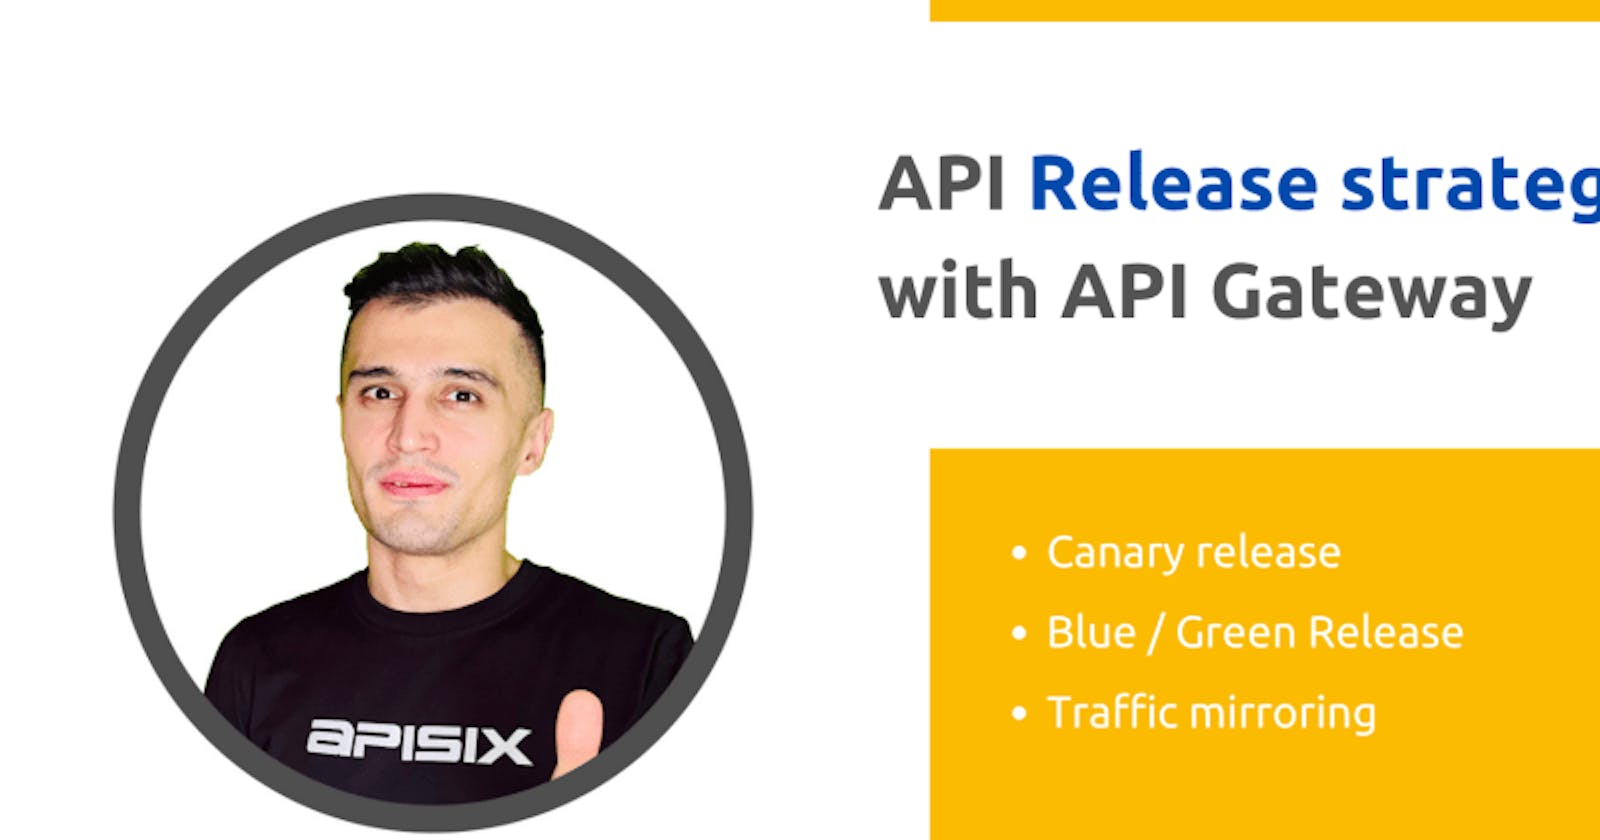 API release strategies with API Gateway